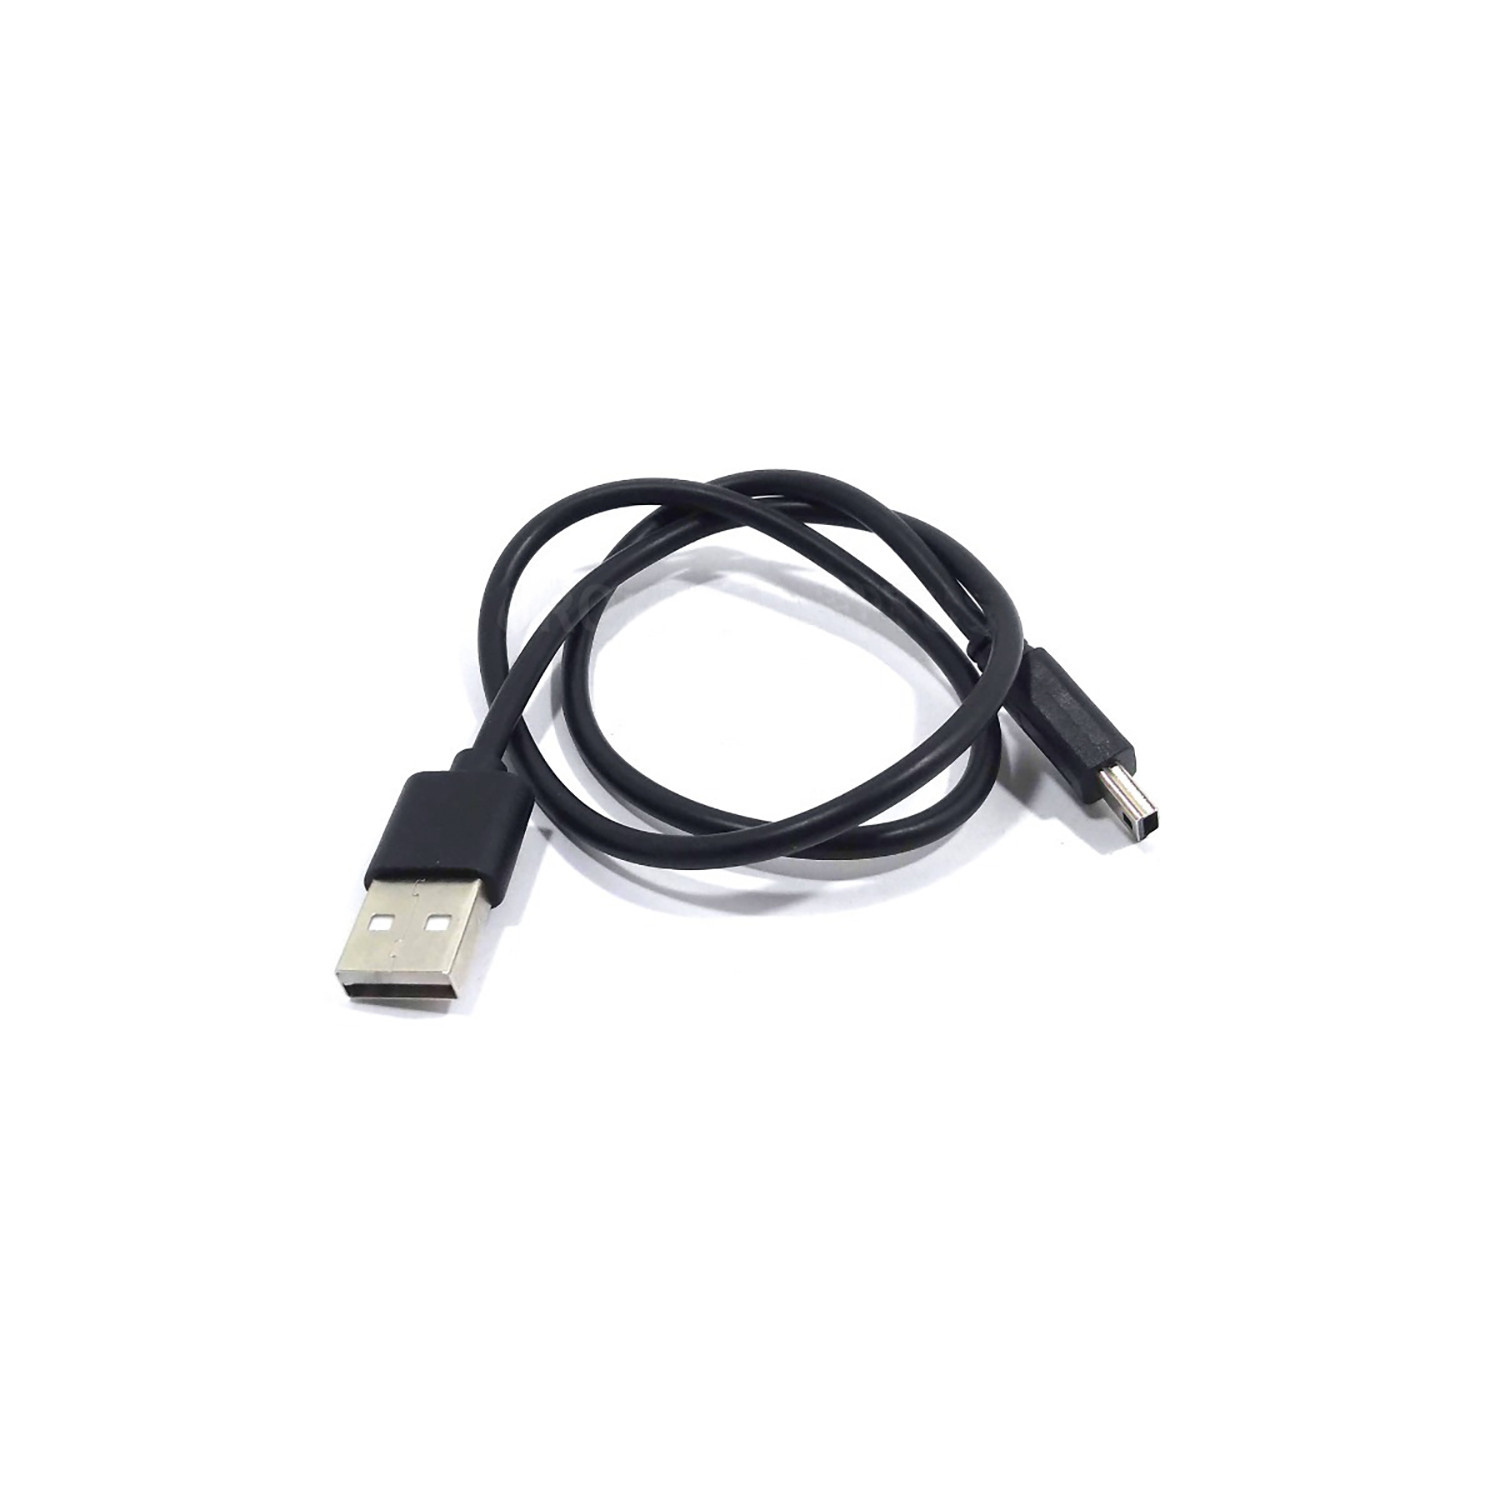 Cable Cargador USB Intercomunicador Ejeas V2